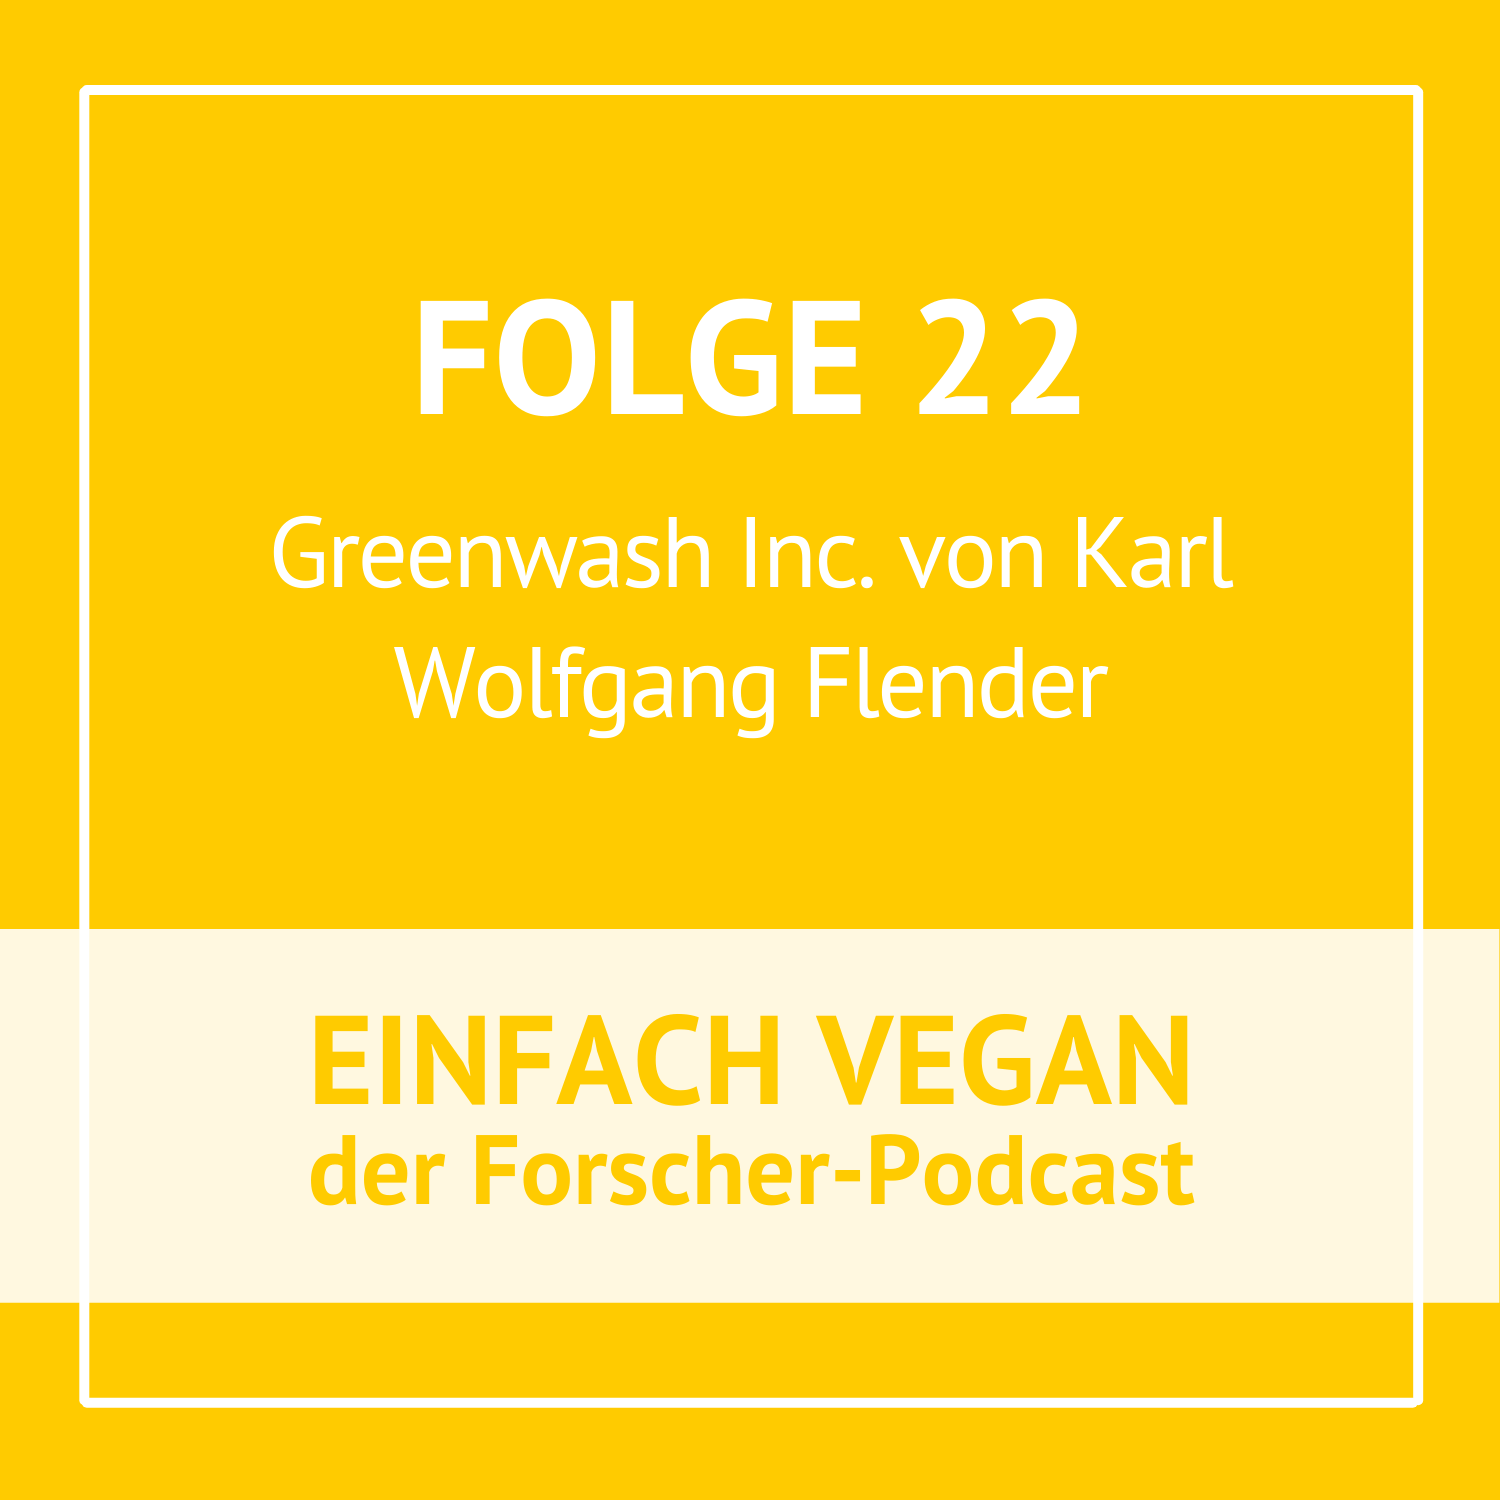 Folge 22 - Greenwash Inc. von Karl Wolfgang Flender